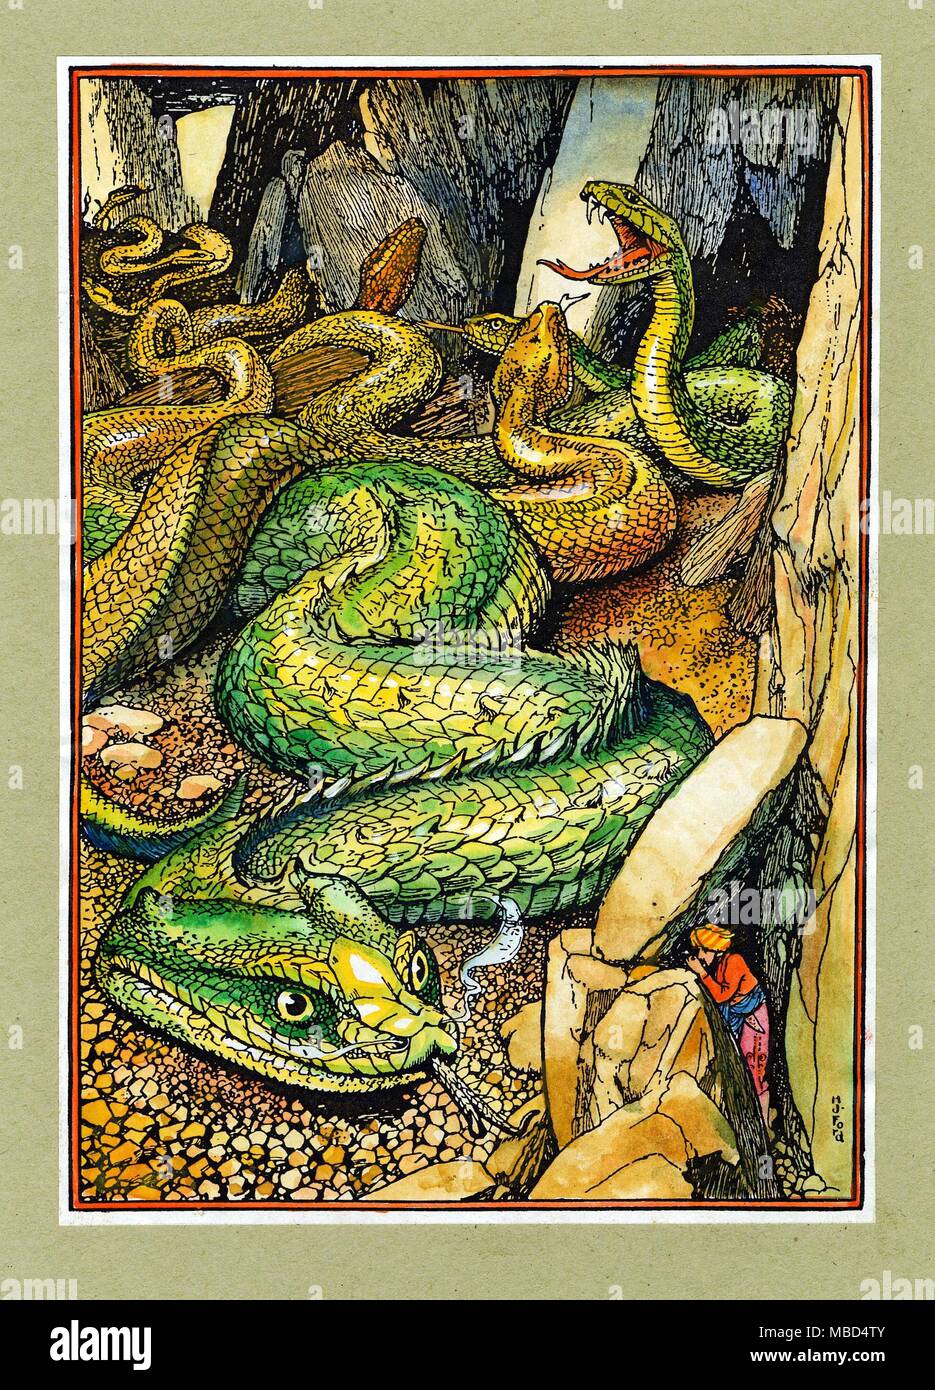 Cuentos de Hadas - Monstruos - ALADDIN Aladdin en el Valle de las serpientes. Dibujo pintado a mano por H. J. Ford, desde la edición de 1908 de Andrew Lang el Arabian Nights entretenimientos. Foto de stock